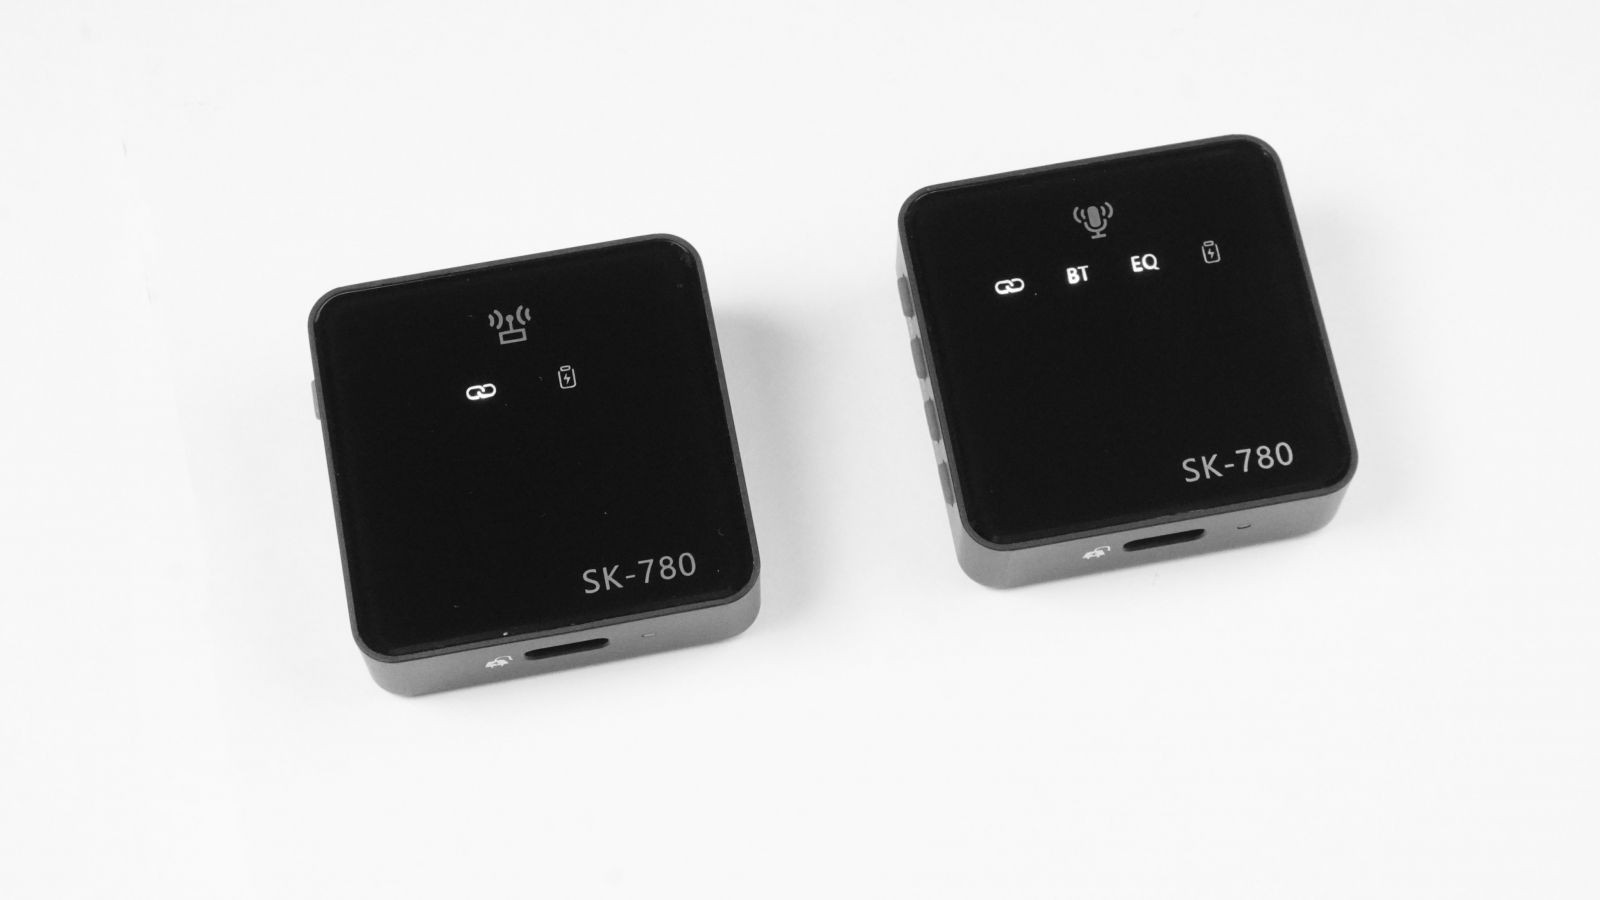 Micro cài áo Wireless SK780 - Mic thu âm không dây kết hợp Sound Card - Lấy nhạc qua bluetooth 5.0 chuyên youtuber, tiktoker, thu âm vlog chuyên nghiệp chất lượng cao